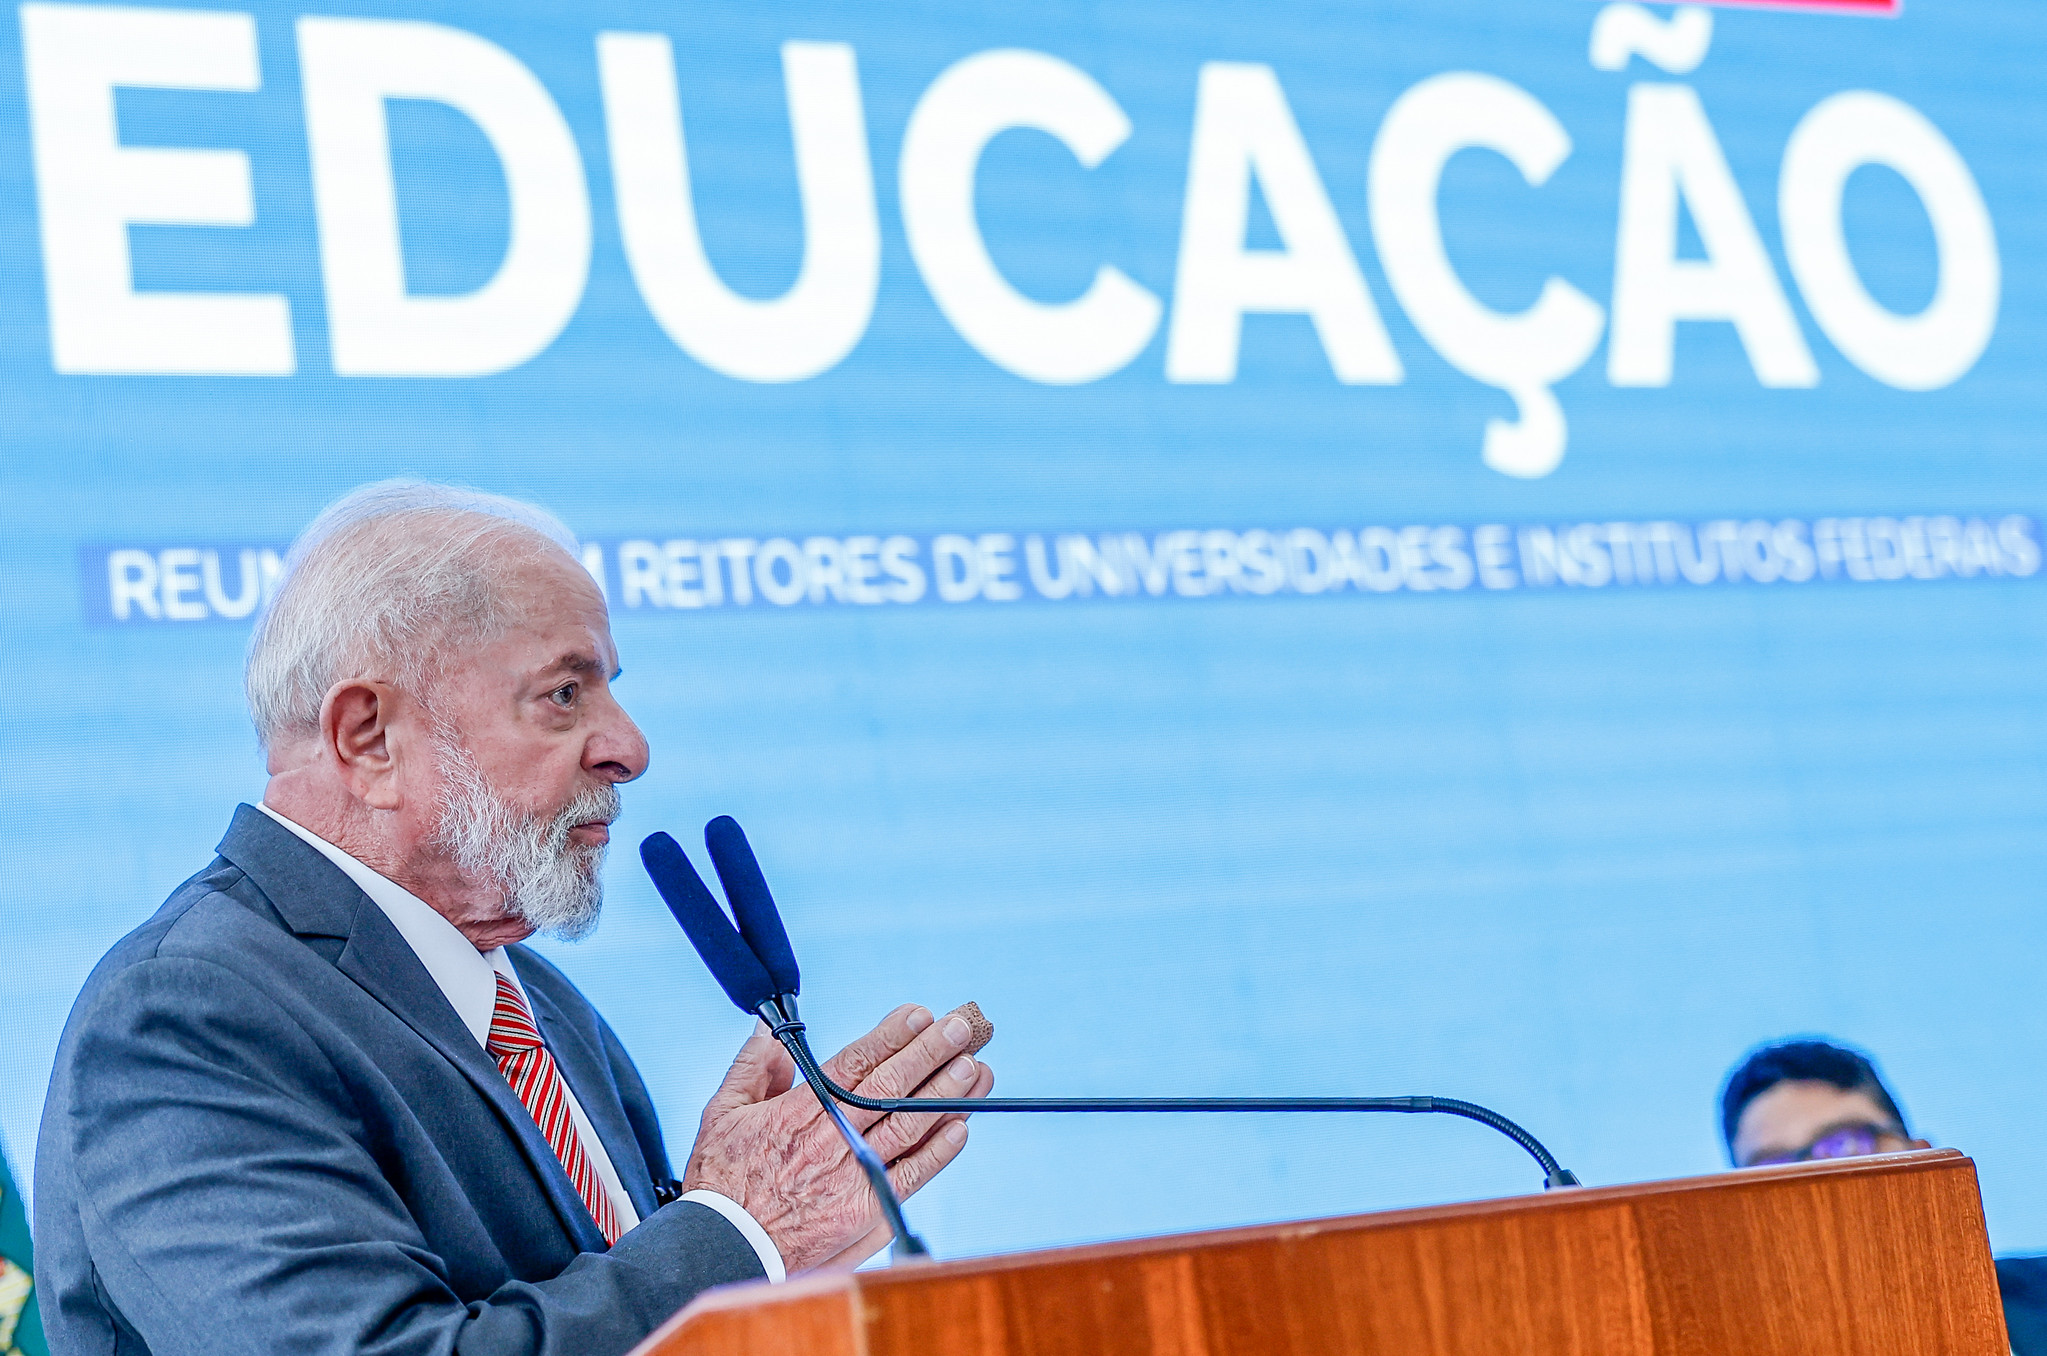 Após rumor de limite a gastos, Lula defende investir em educação: “Oxigênio da nação”